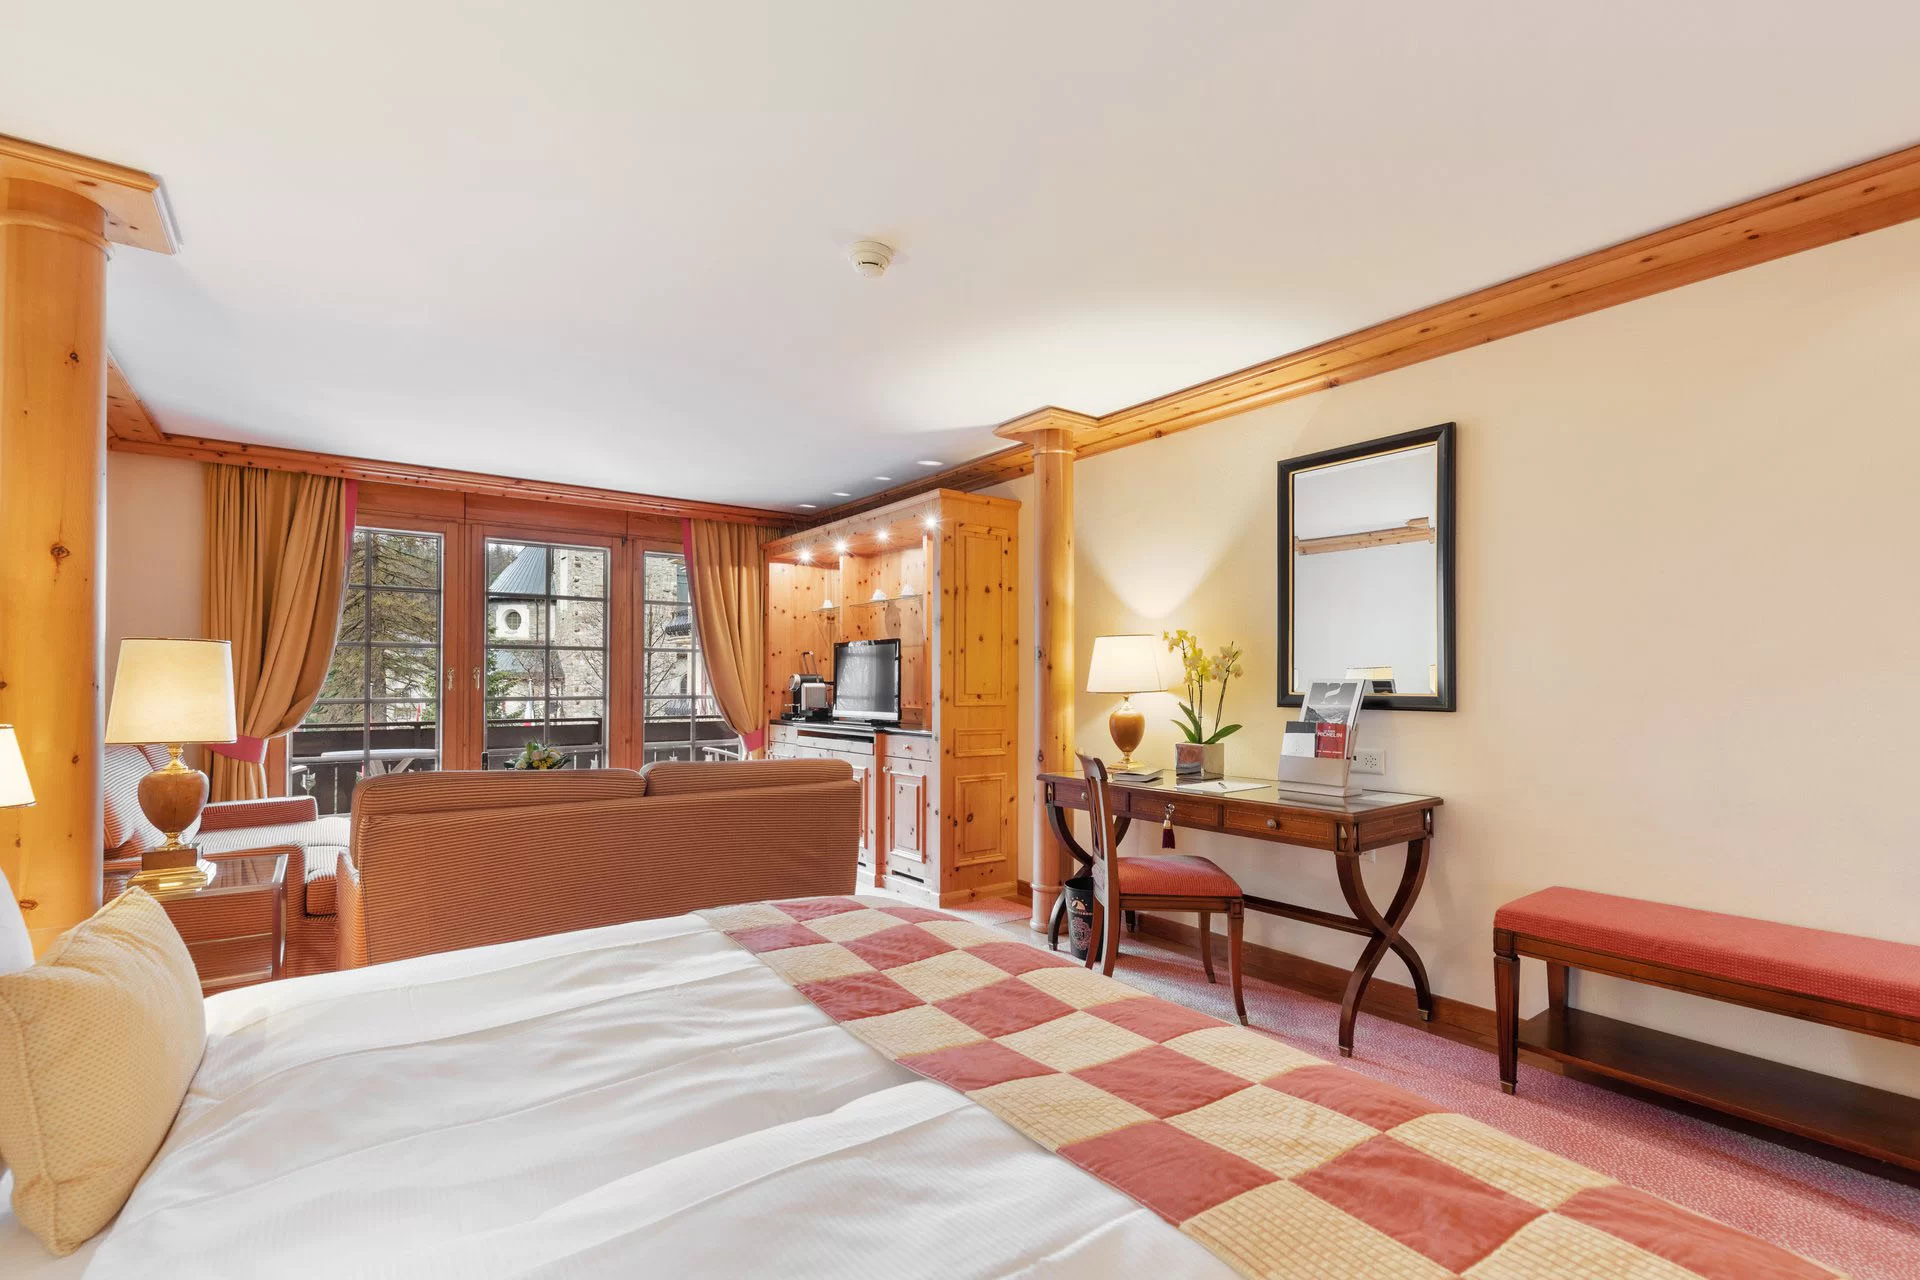 Classic Superior Double Room Bedroom View - Grand Hotel Zermatterhof